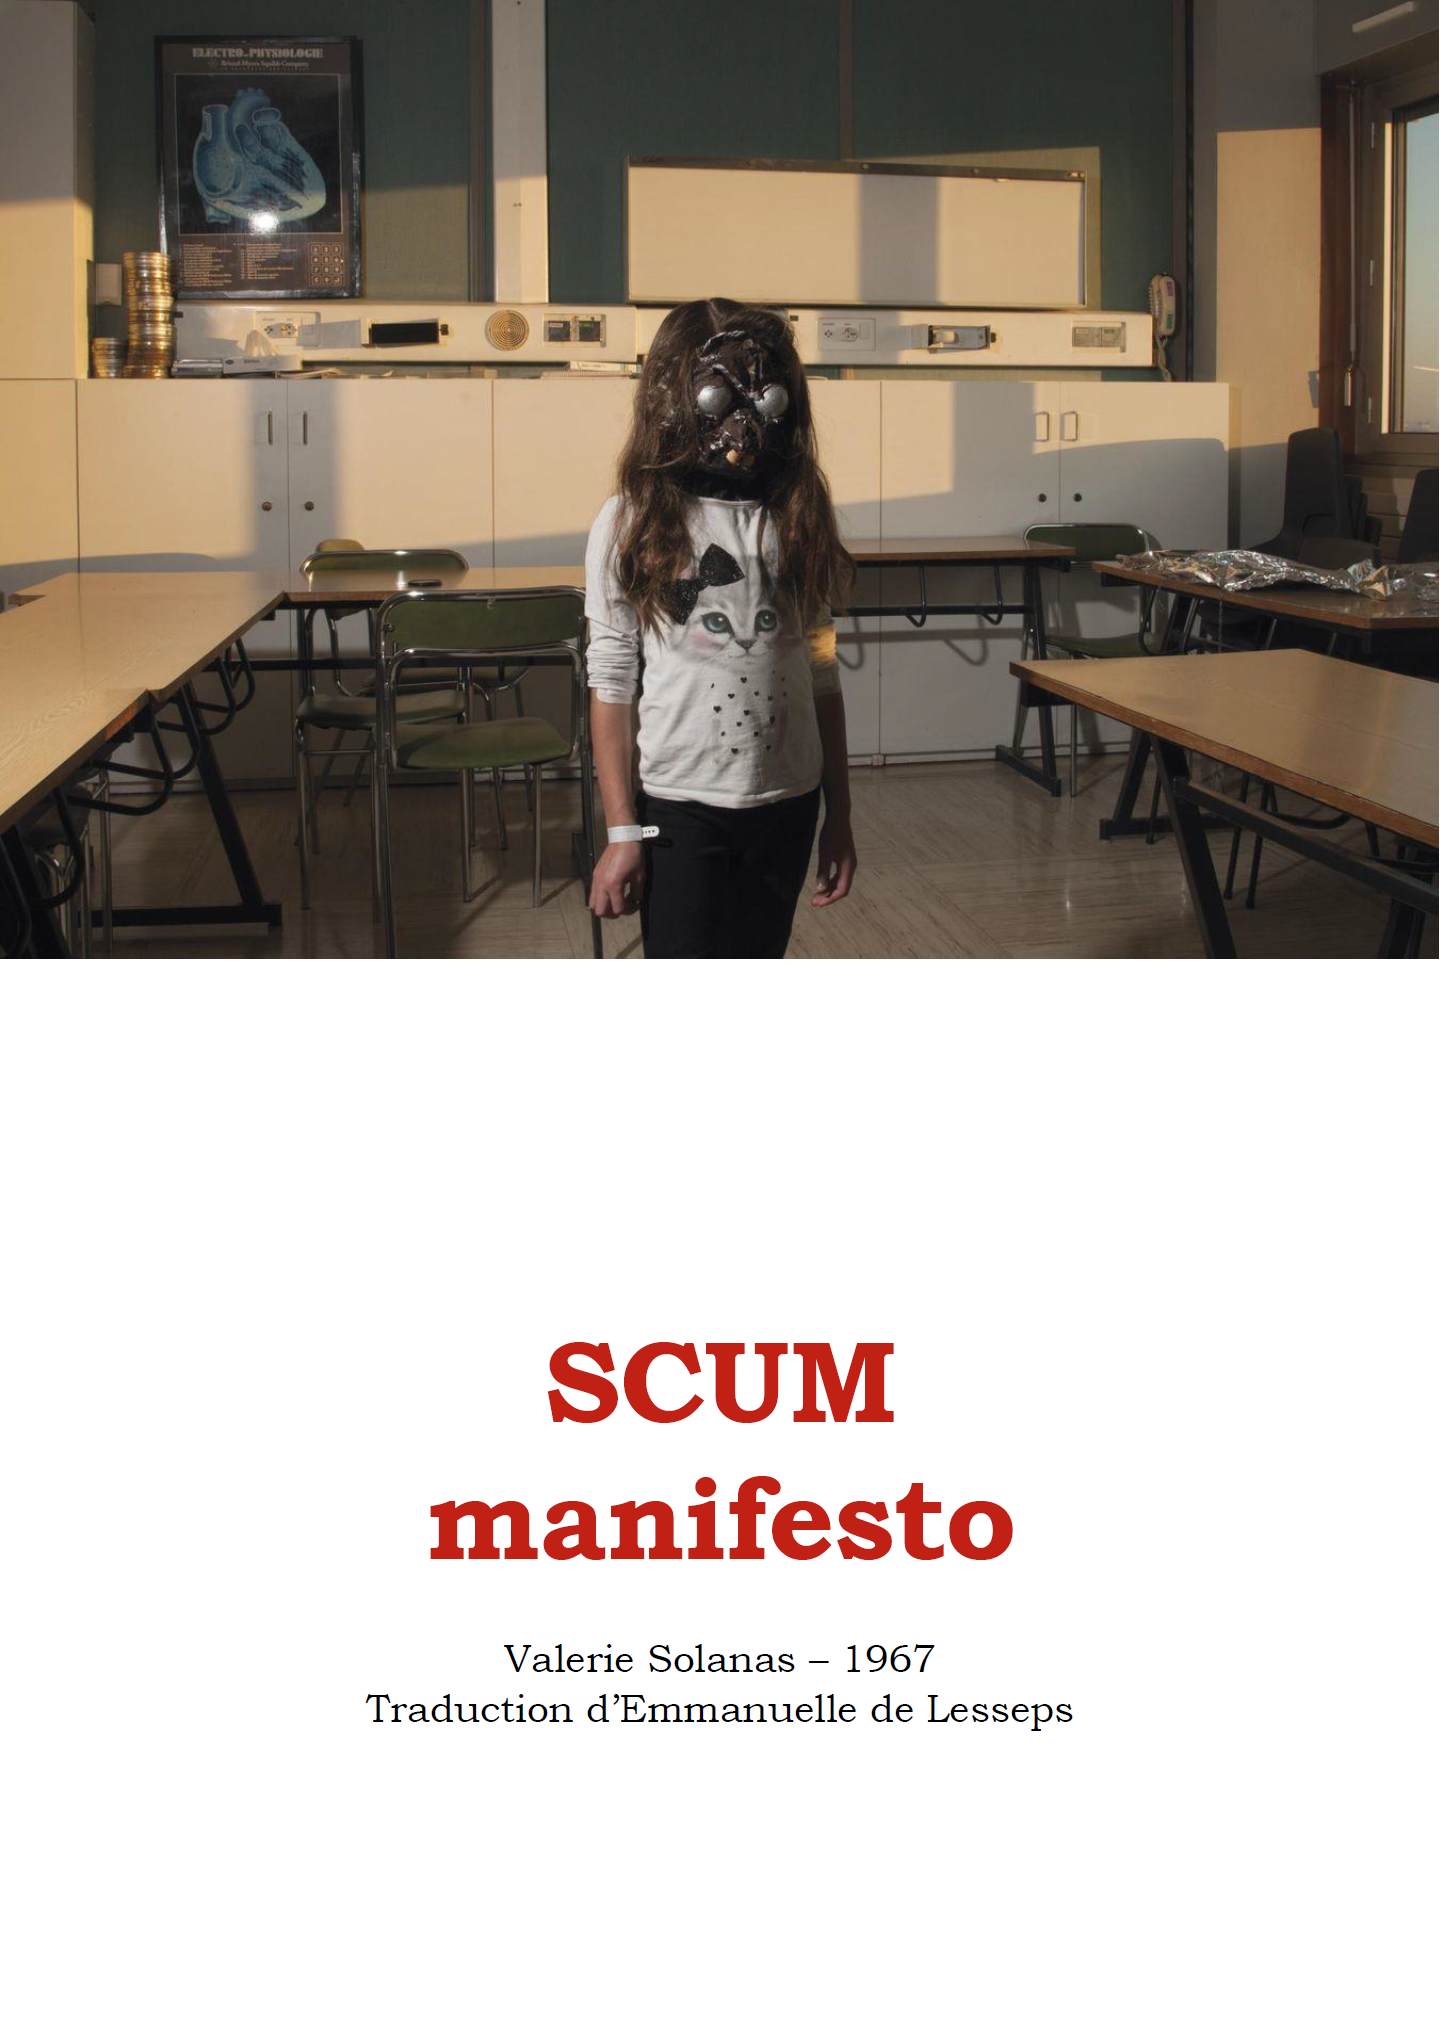 Scum manifesto – Valérie Solanas – Tarage